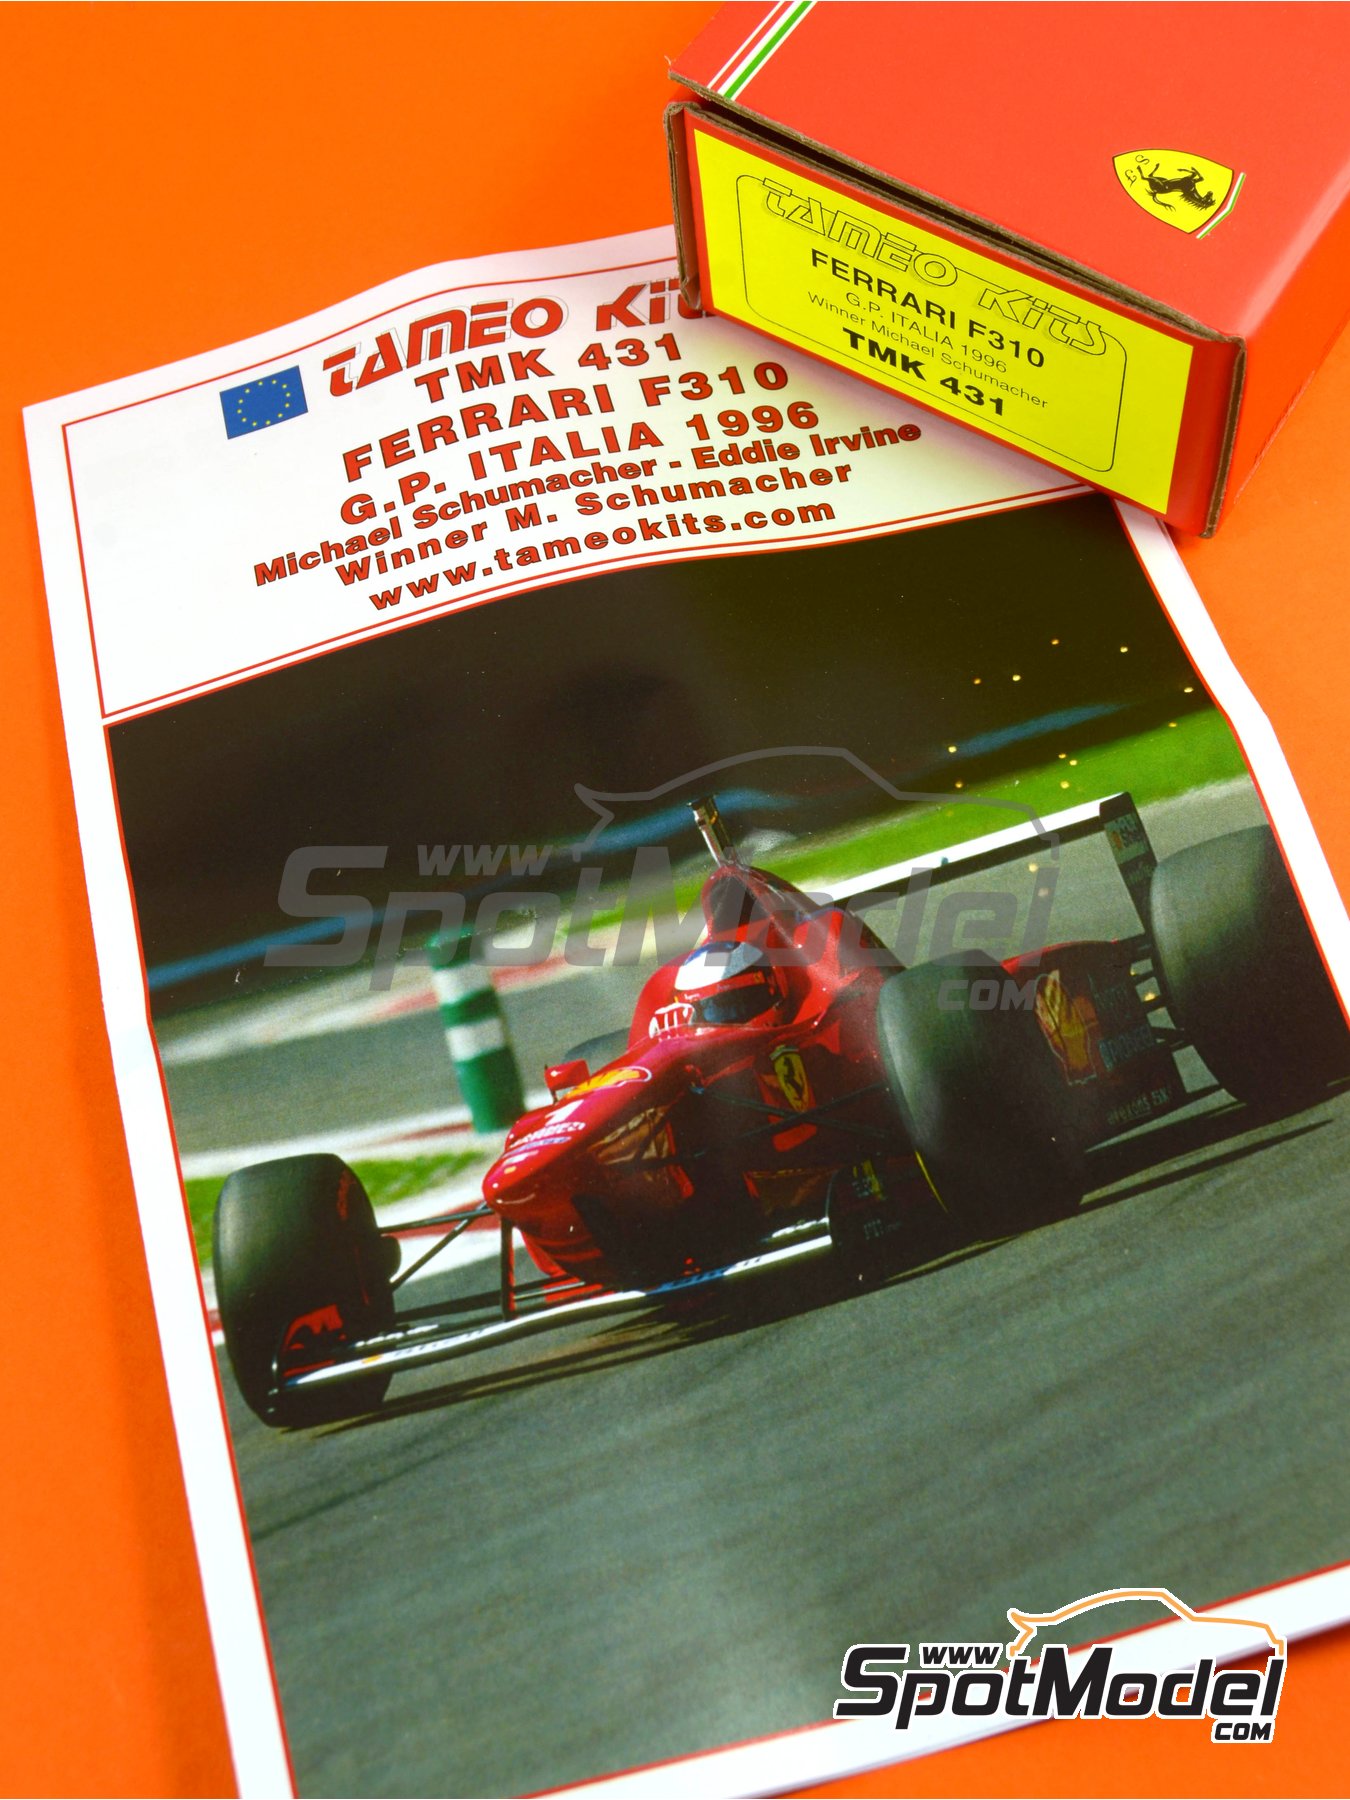 Ixo La Storia sf01 a Sf10 Ferrari F1 Schumacher Prost Lauda Fangio 1:43 rd 